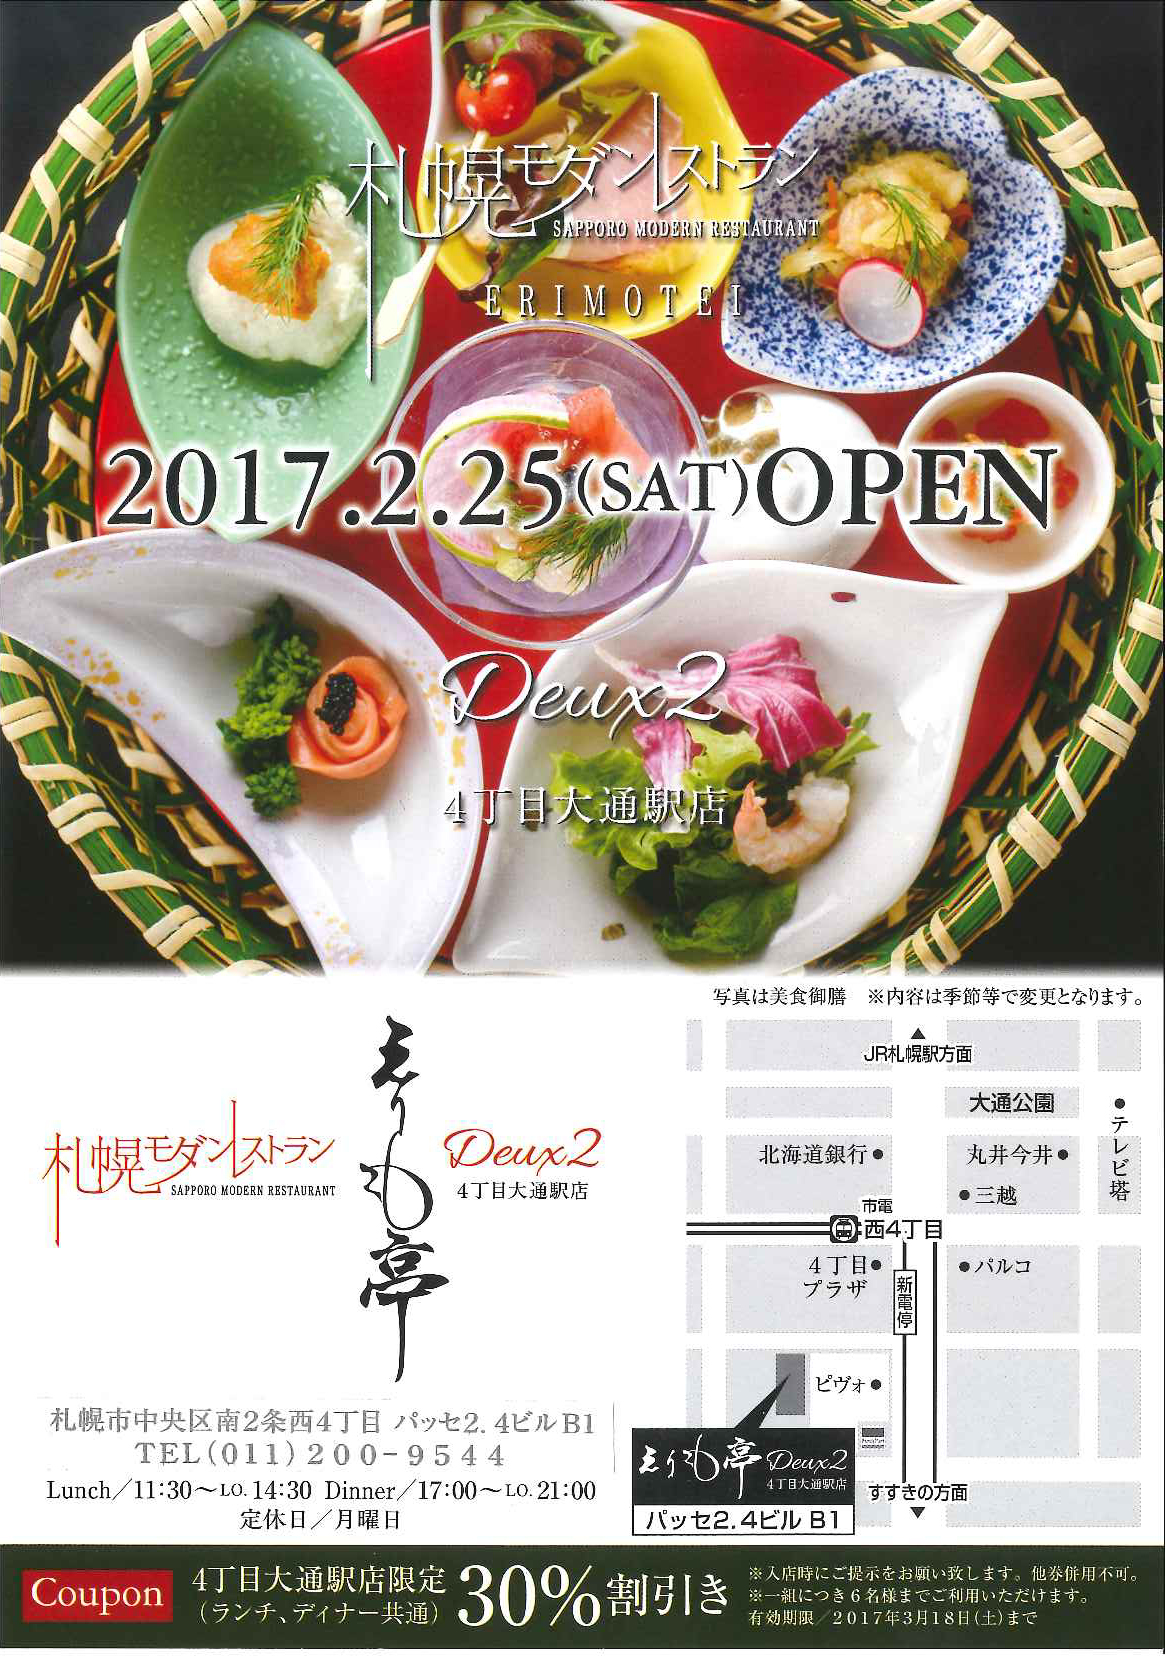 札幌モダンレストランえりも亭deux2さんがopenしました 店舗そのままオークション 札幌中央店